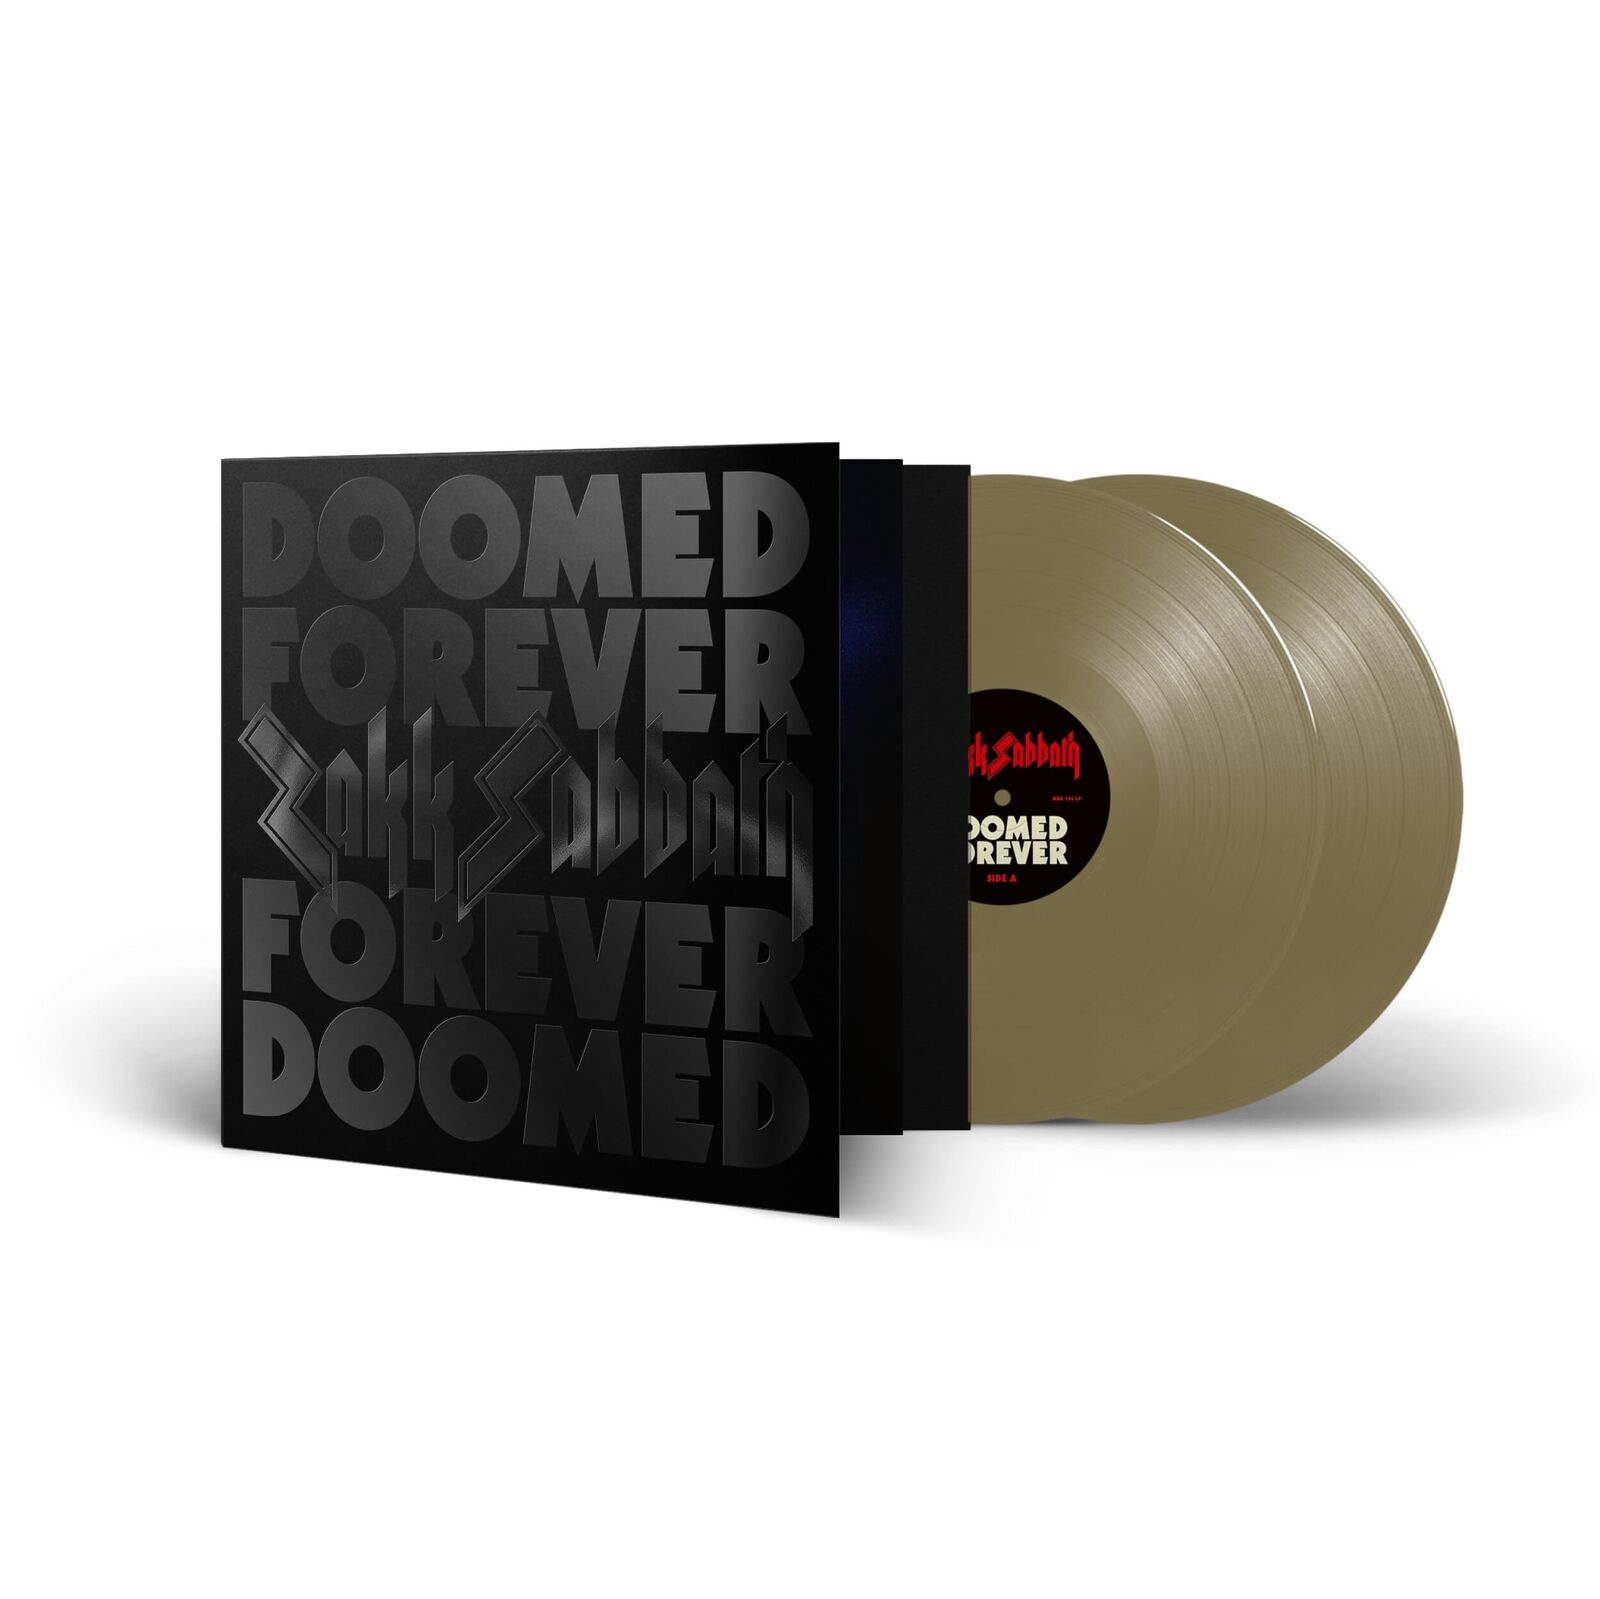 Zakk Sabbath Doomed Forever Forever Doomed (Vinyl)